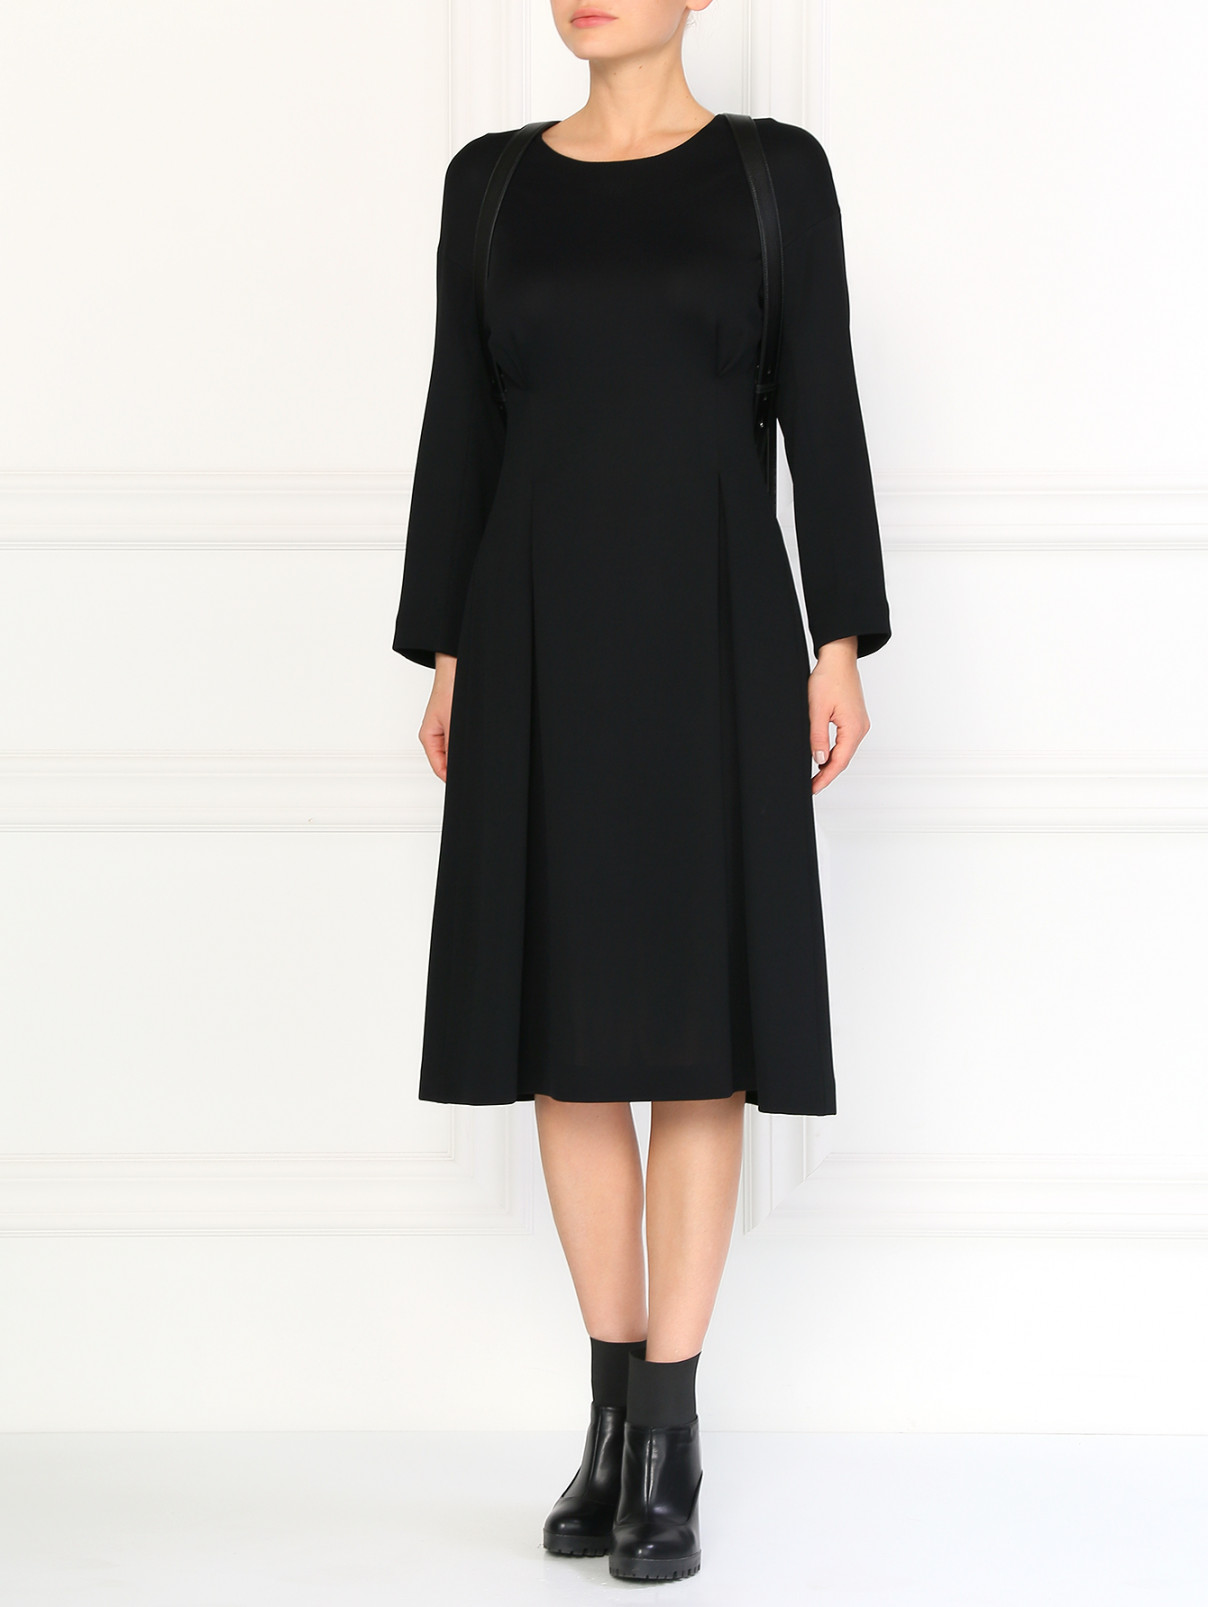 Платье с рукавом 3/4 и боковыми вытачками Jil Sander  –  Модель Общий вид  – Цвет:  Черный